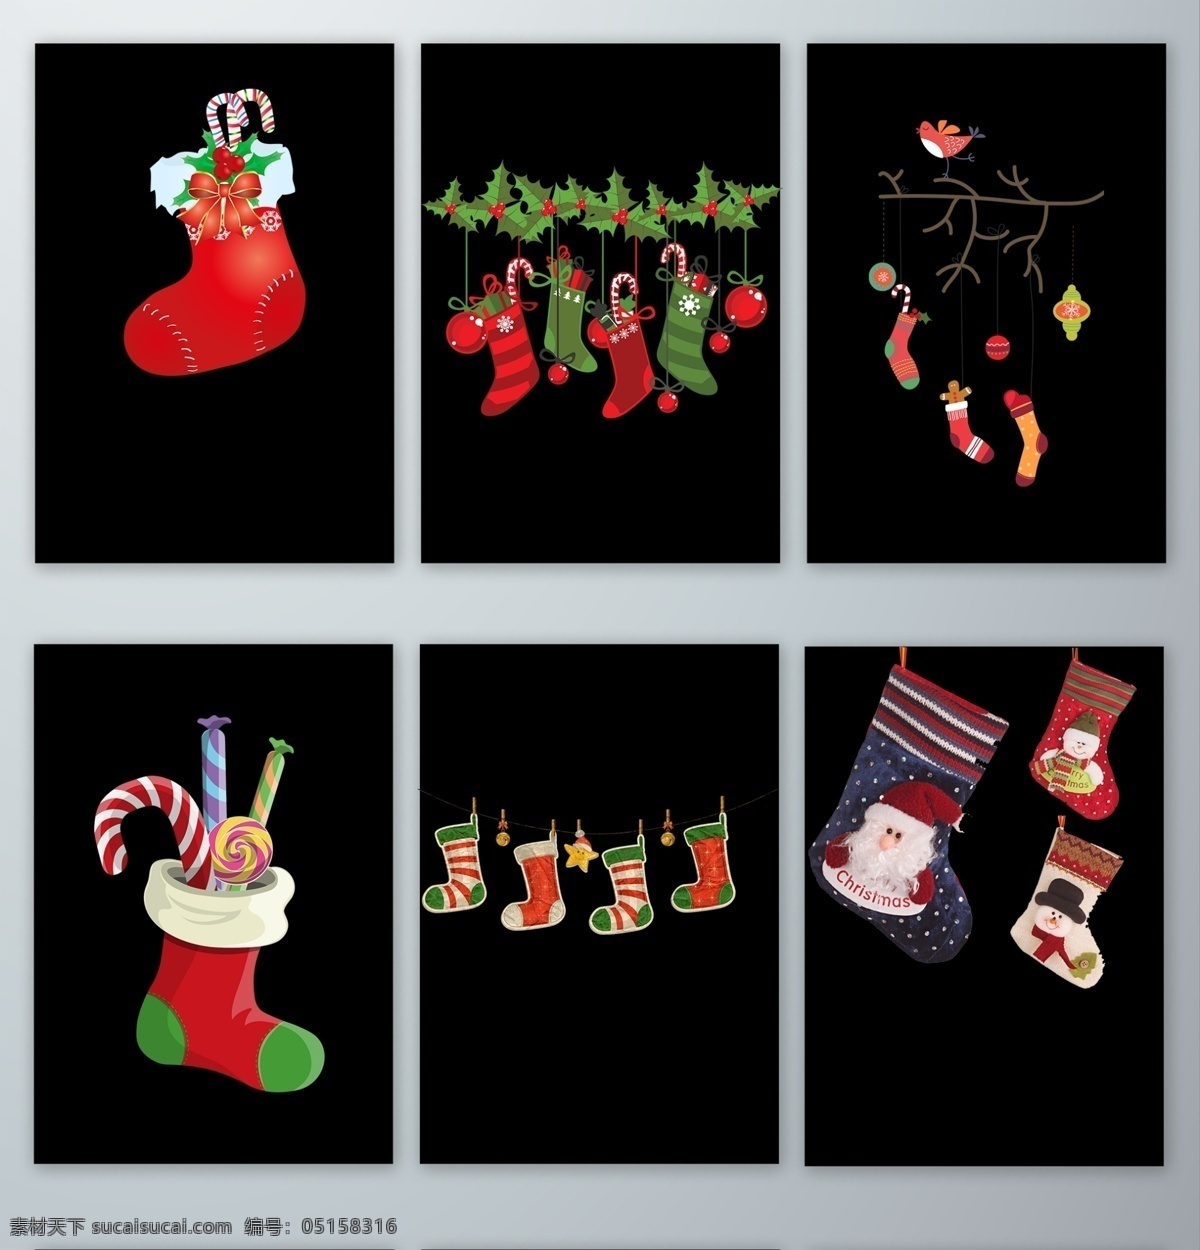 圣诞节 高清 卡 通风 袜子 圣诞袜子 高清卡通袜子 袜子素材 圣诞节素材 圣诞节海报 装礼物的袜子 圣诞彩色袜子 五颜六色袜子 漂亮圣诞袜子 好看圣诞袜子 各种各样袜子 形态各异袜子 圣诞节袜子 分层